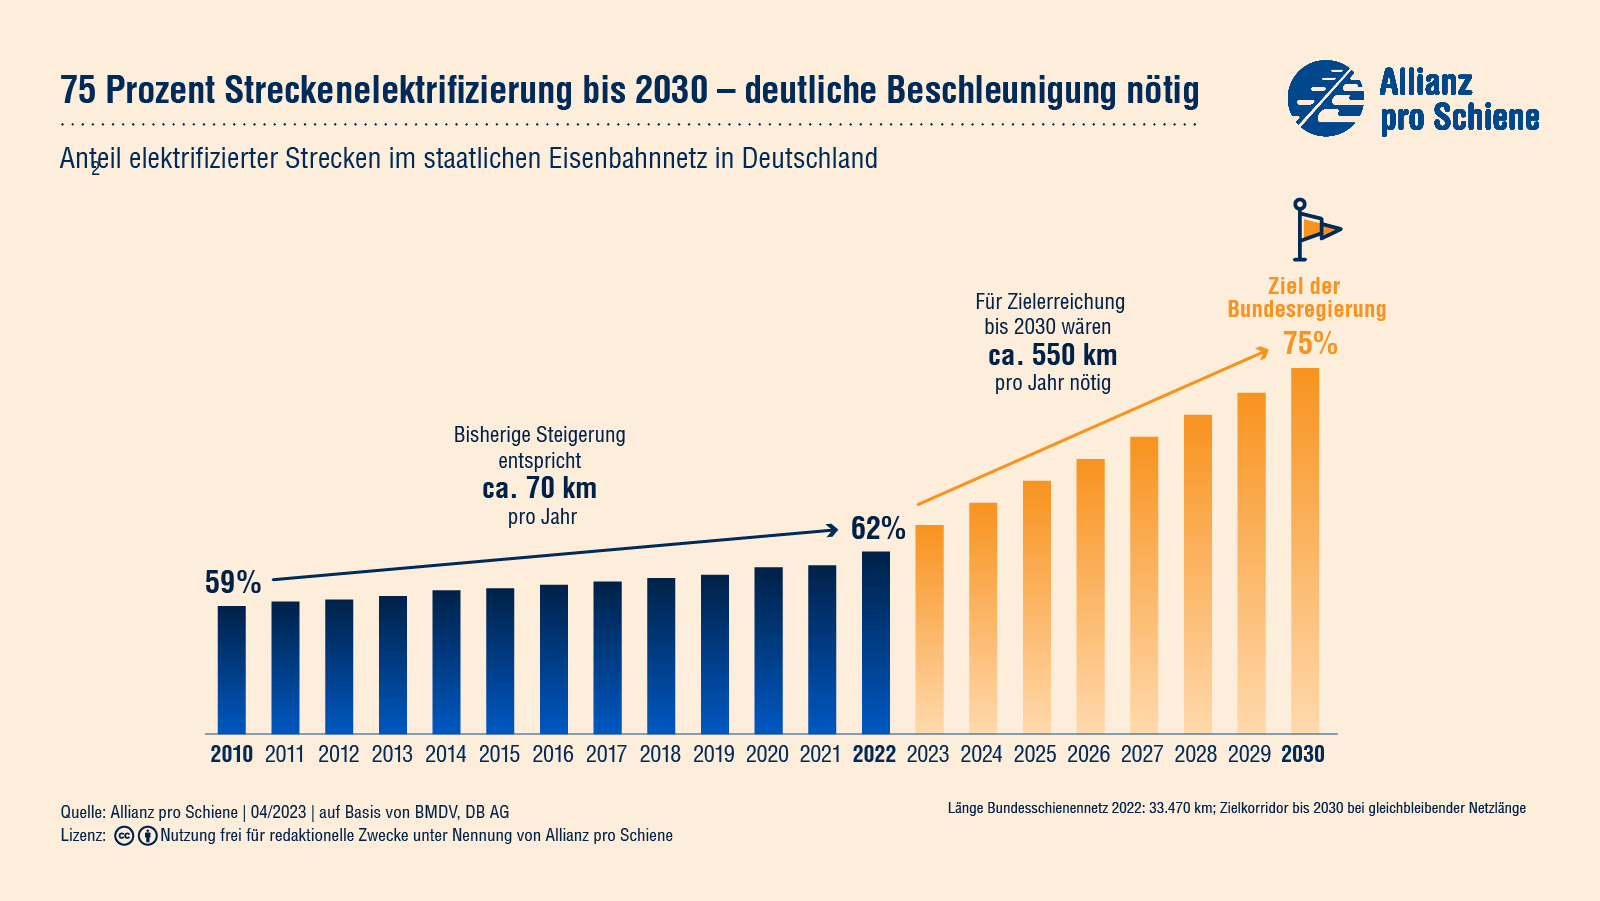 Nur 61 Prozent der Schienen sind in Deutschland elektrifiziert. Das Ziel der Bundesregierung lautet 75 Prozent bis 2030.